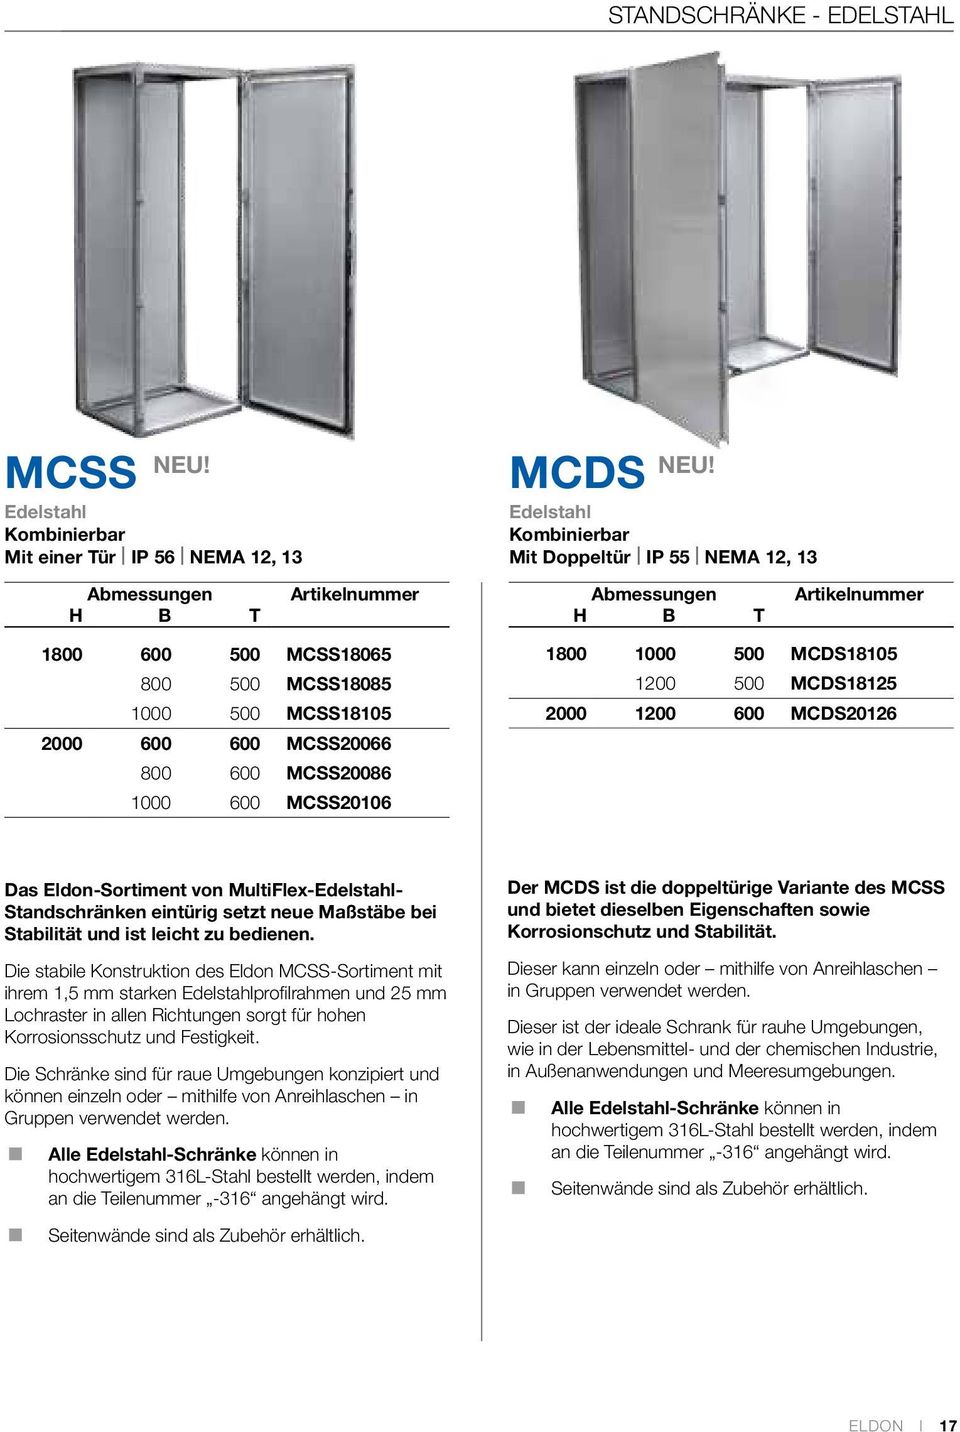 MCDS Edelstahl Kombinierbar Mit Doppeltür IP 55 NEMA 12, 13 1800 1000 500 MCDS18105 1200 500 MCDS18125 2000 1200 600 MCDS20126 Das Eldon-Sortiment von MultiFlex-Edelstahl- Standschränken eintürig